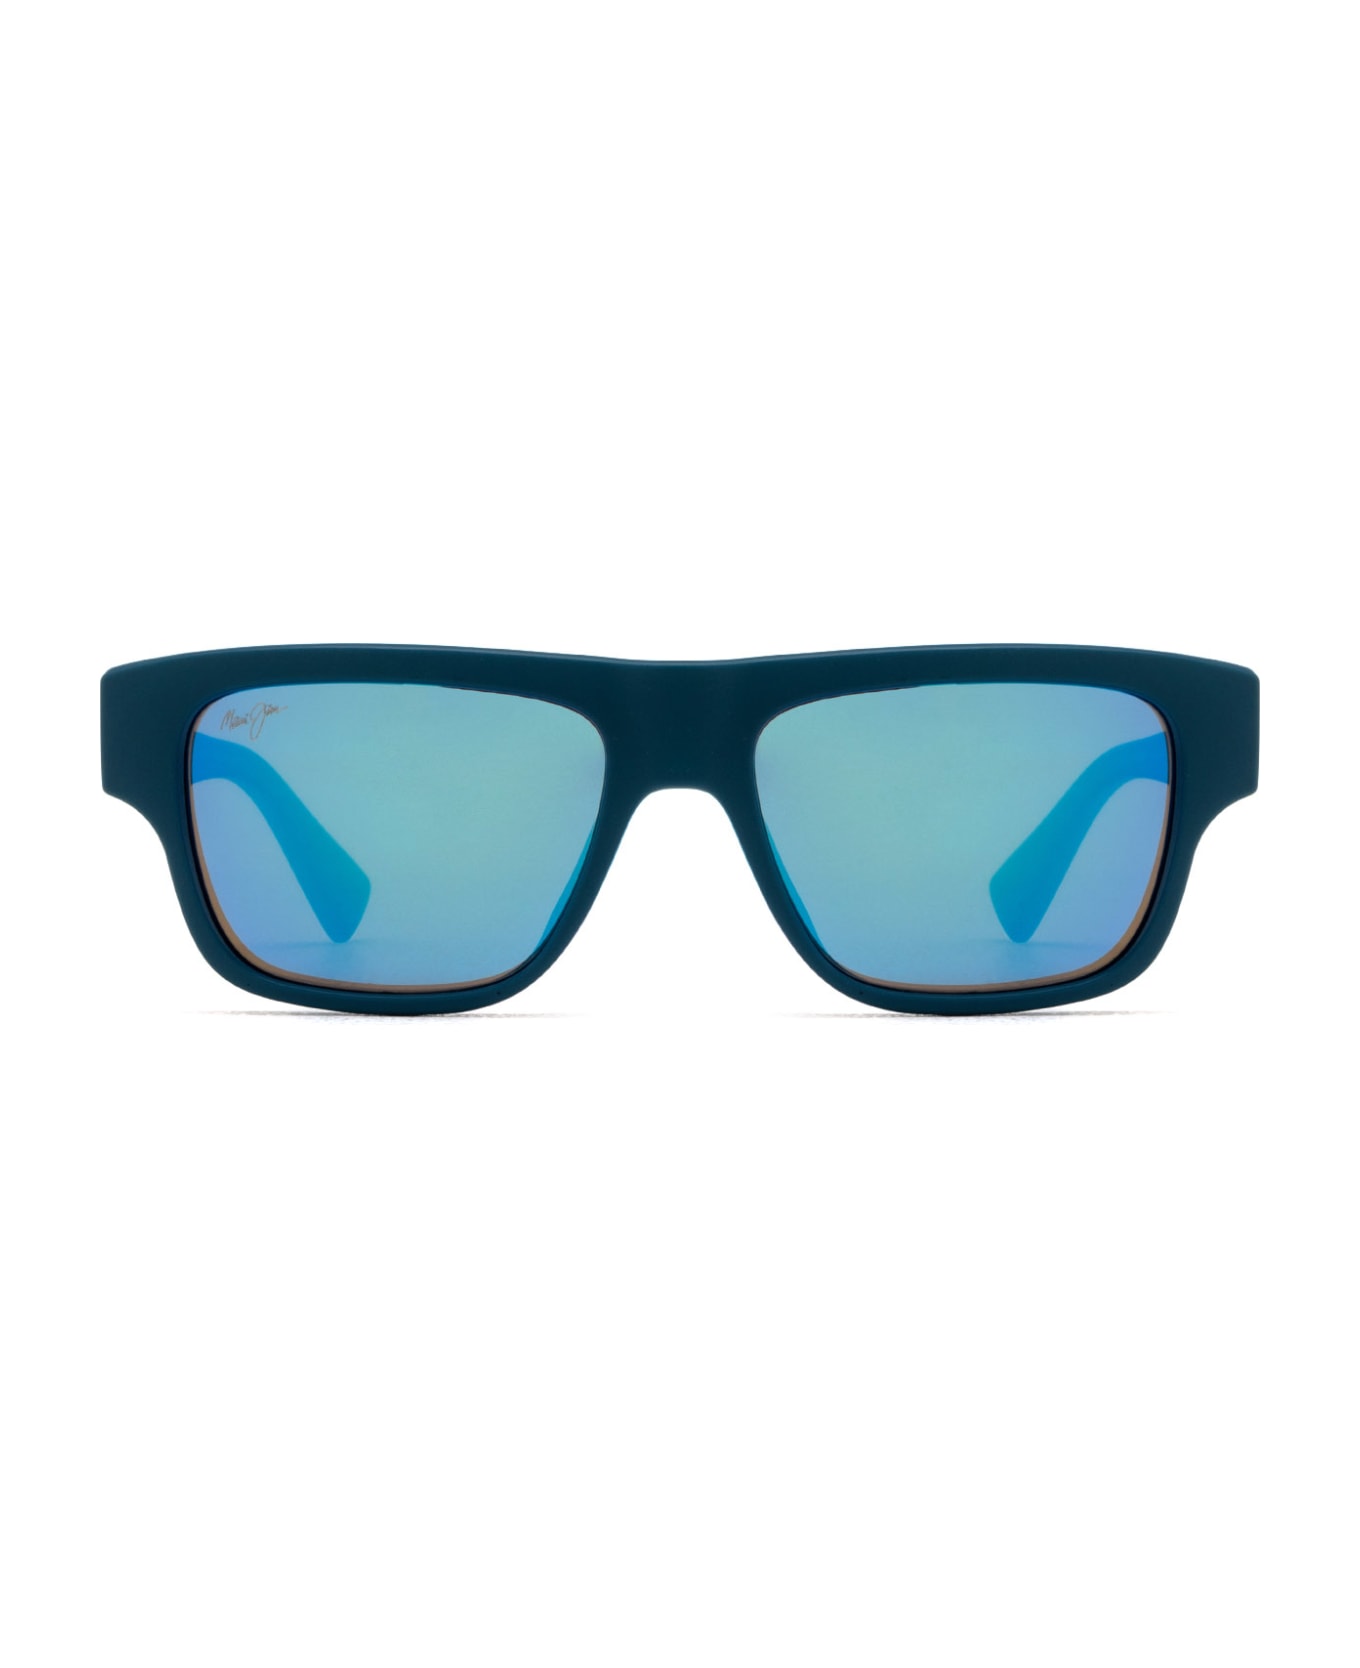 Maui Jim Mj638 Matte Petrol Blue Sunglasses - Matte Petrol Blue